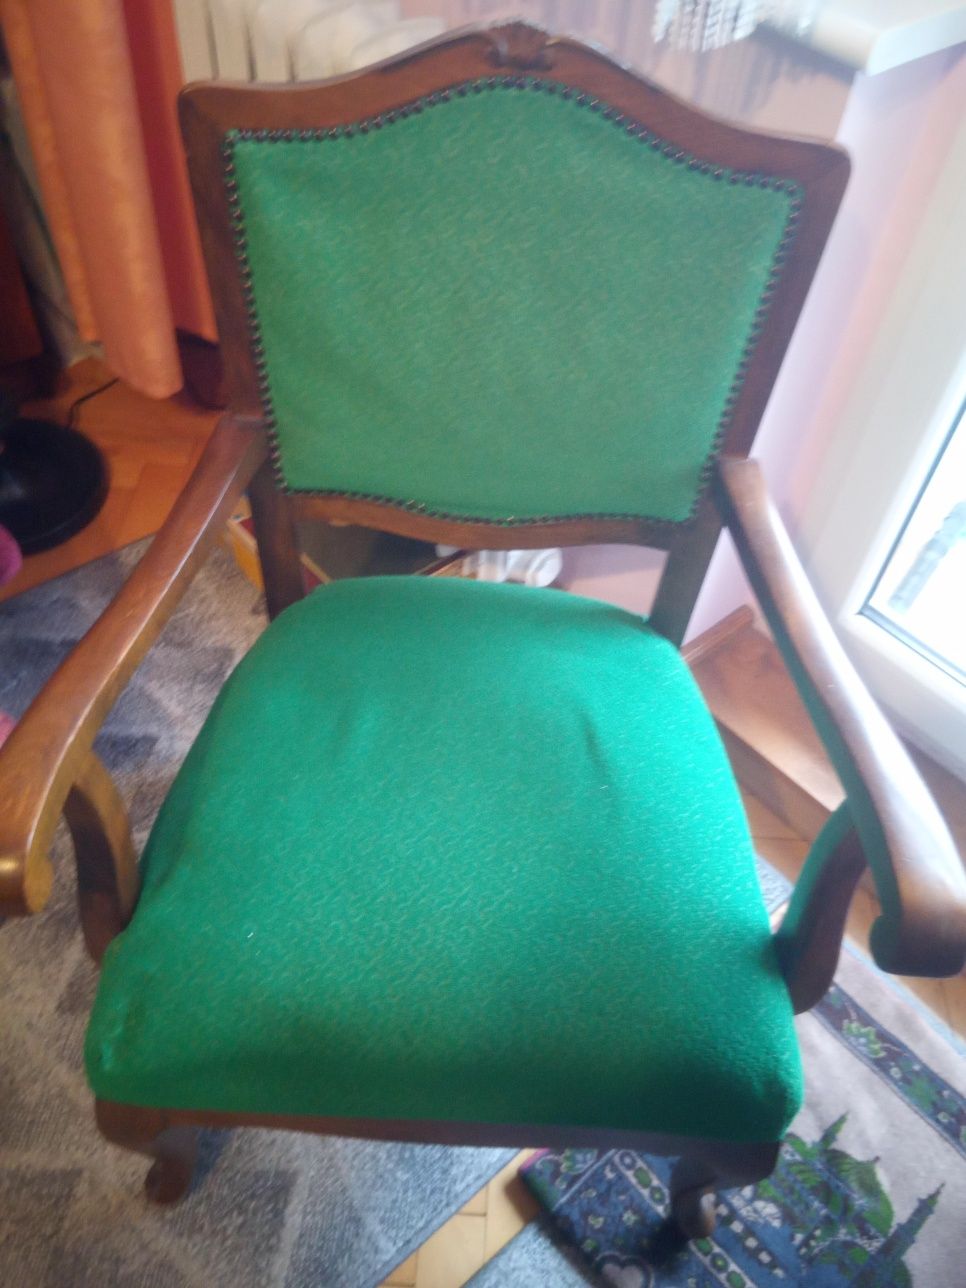 Krzesła stylowe  2 szt, gięte drewno, zmiana na pewno tapicerki